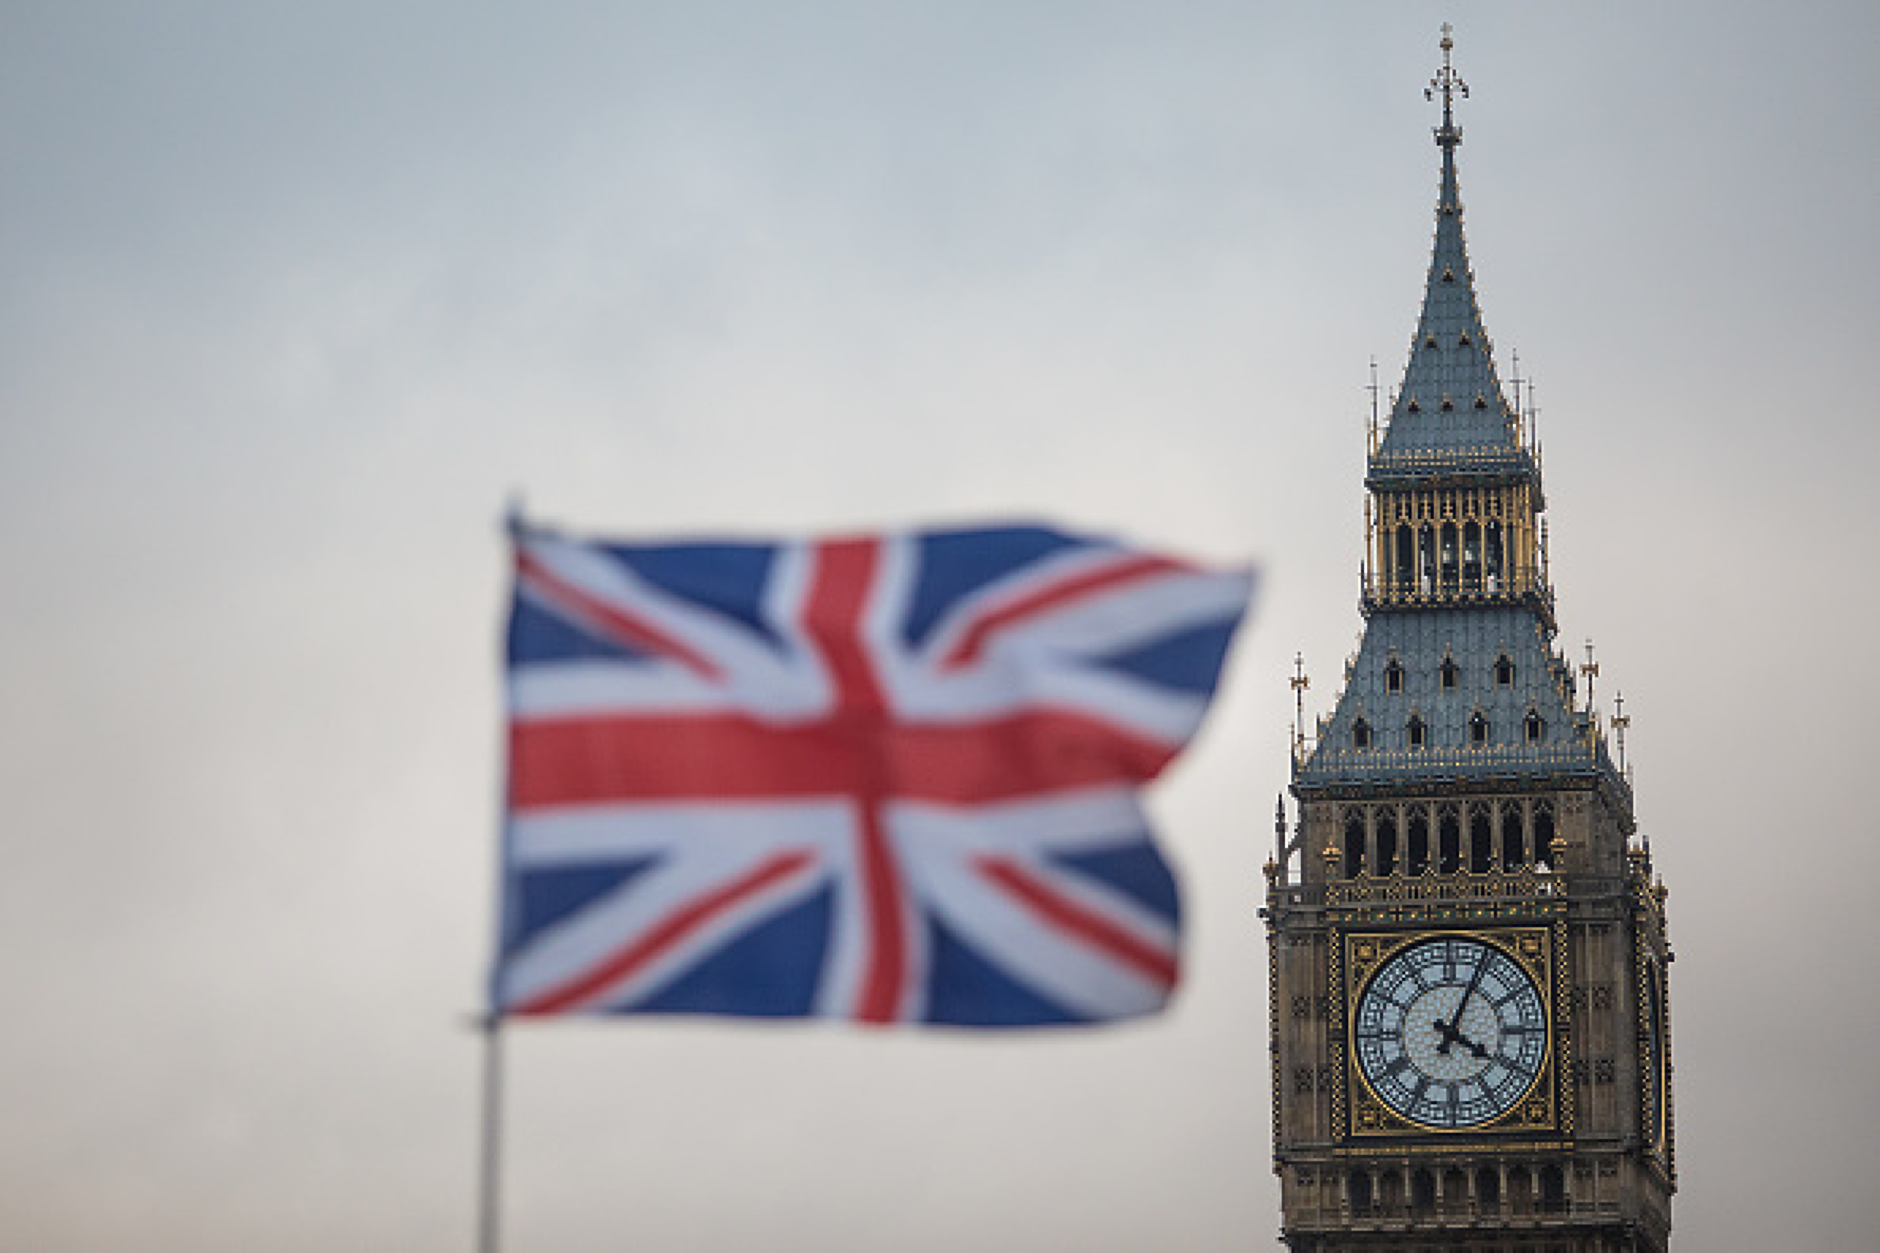 Великобритания поднови списъка със заплахи за националната си сигурност